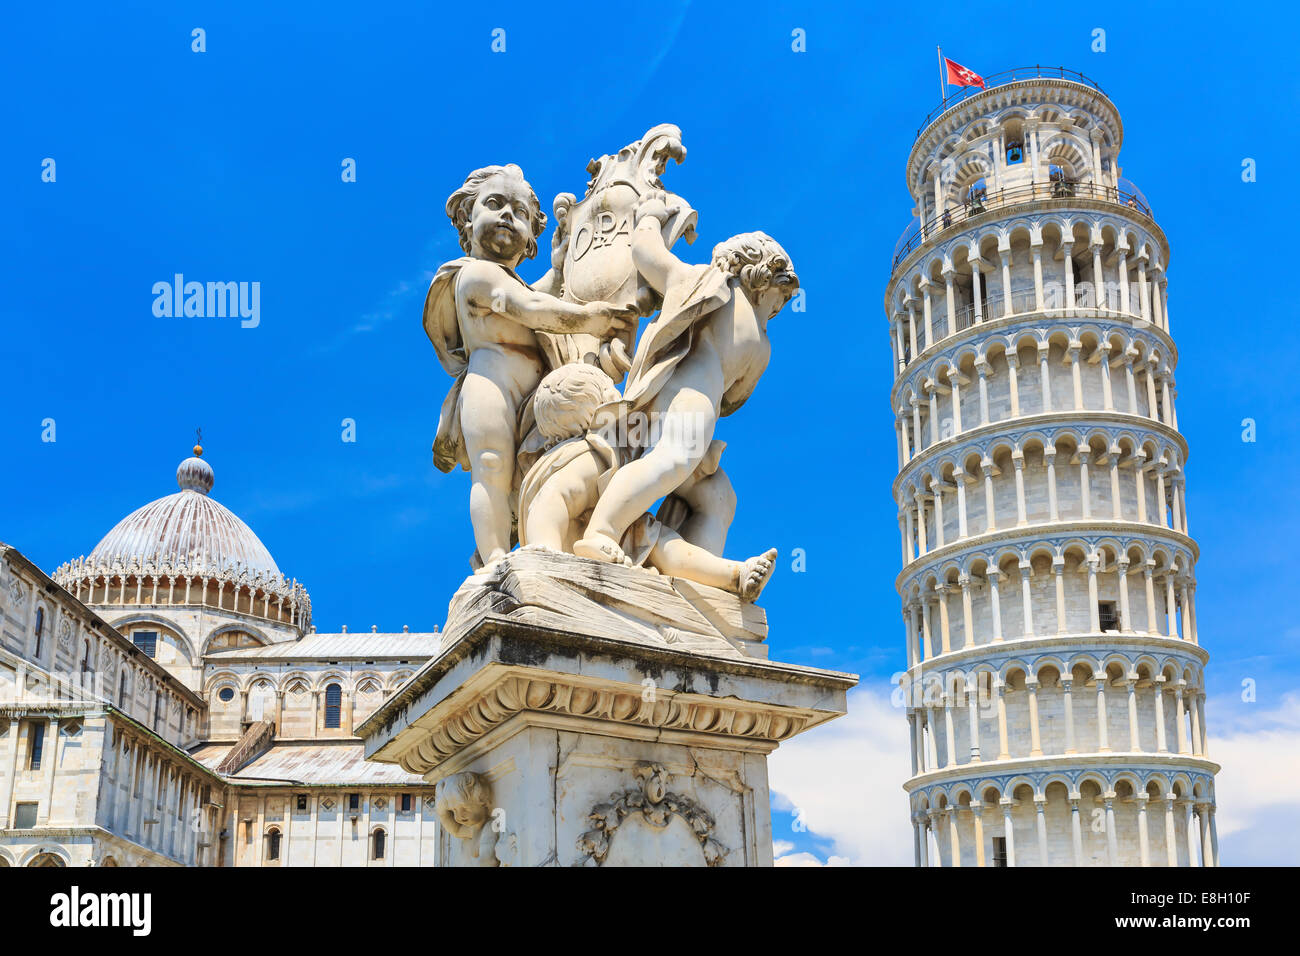 Schiefen Turm in Pisa Italien Stockfoto